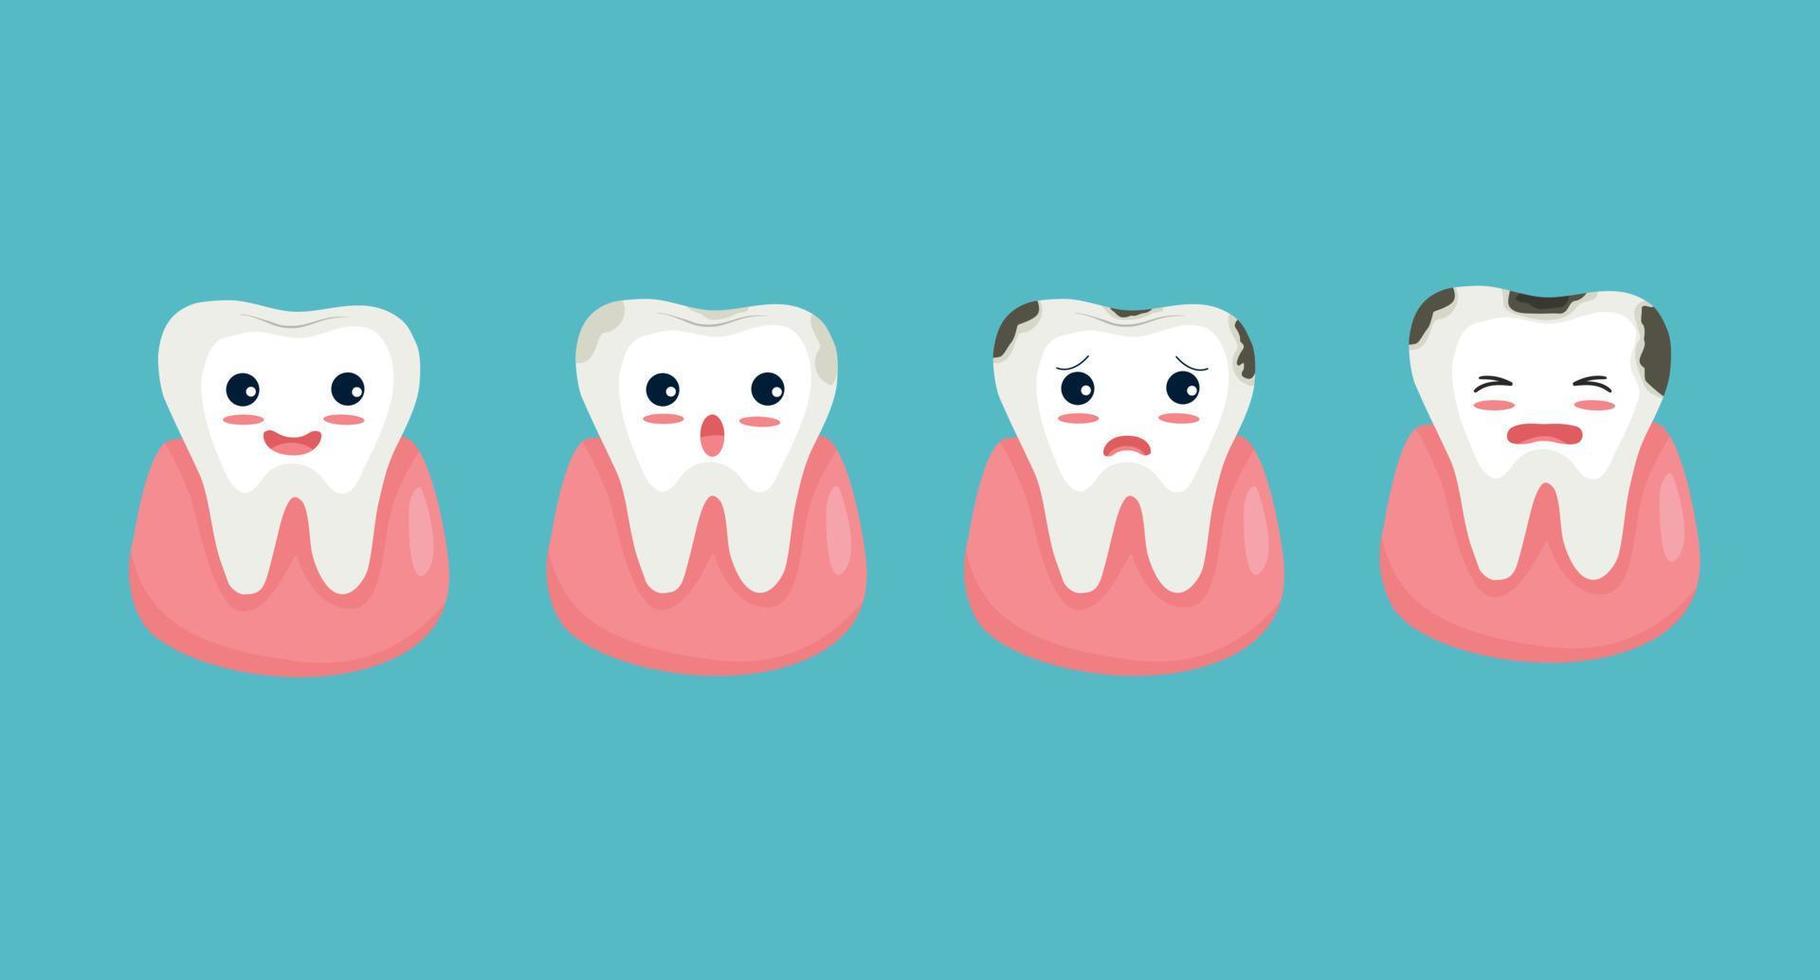 niedlicher zahncharakter, der stadien des zähneverfalls vom gesunden zahn bis zur zahnplaquekaries zeigt vektor